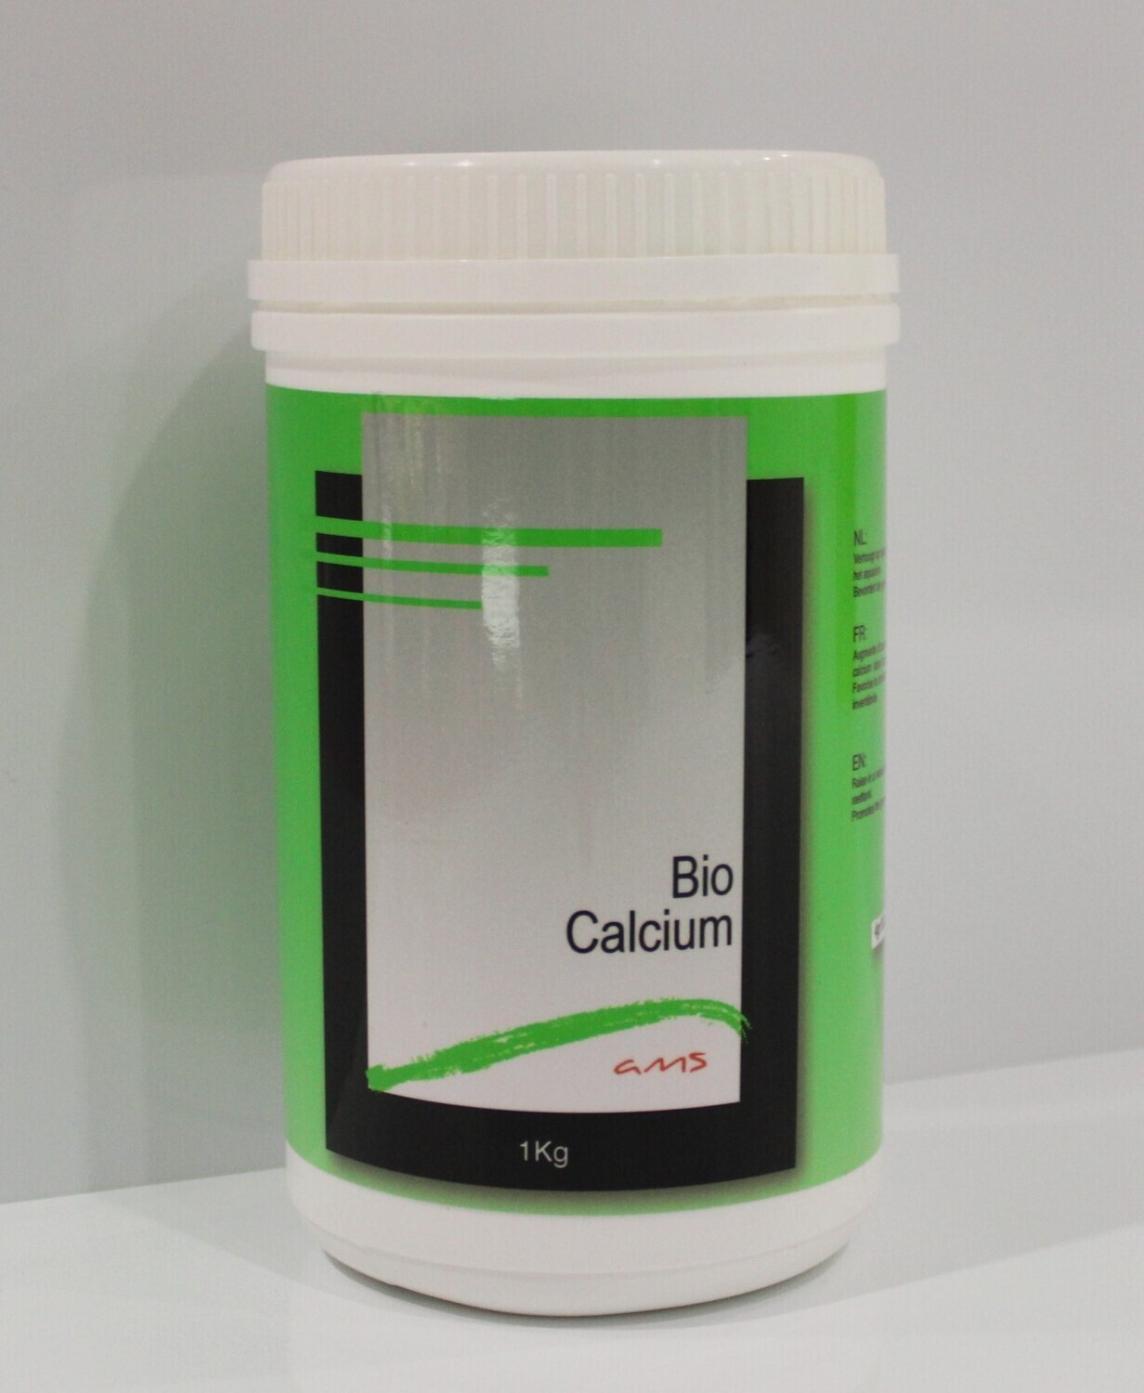 Ams Bio Calcium